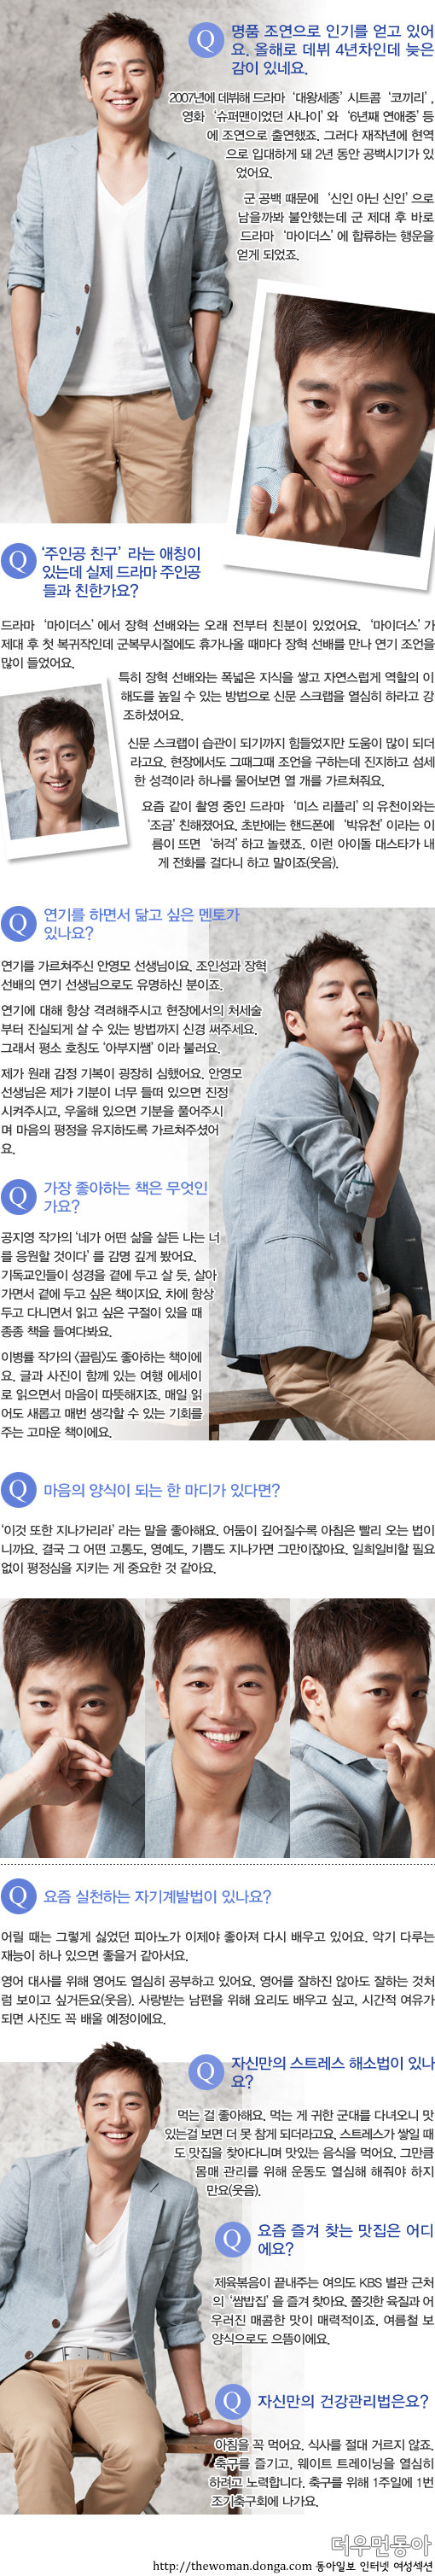 이 남자가 궁금하다! 배우 이상엽 프라이버시 인터뷰 “주인공 친구라는 애칭 얻기까지 촬영 뒷얘기”